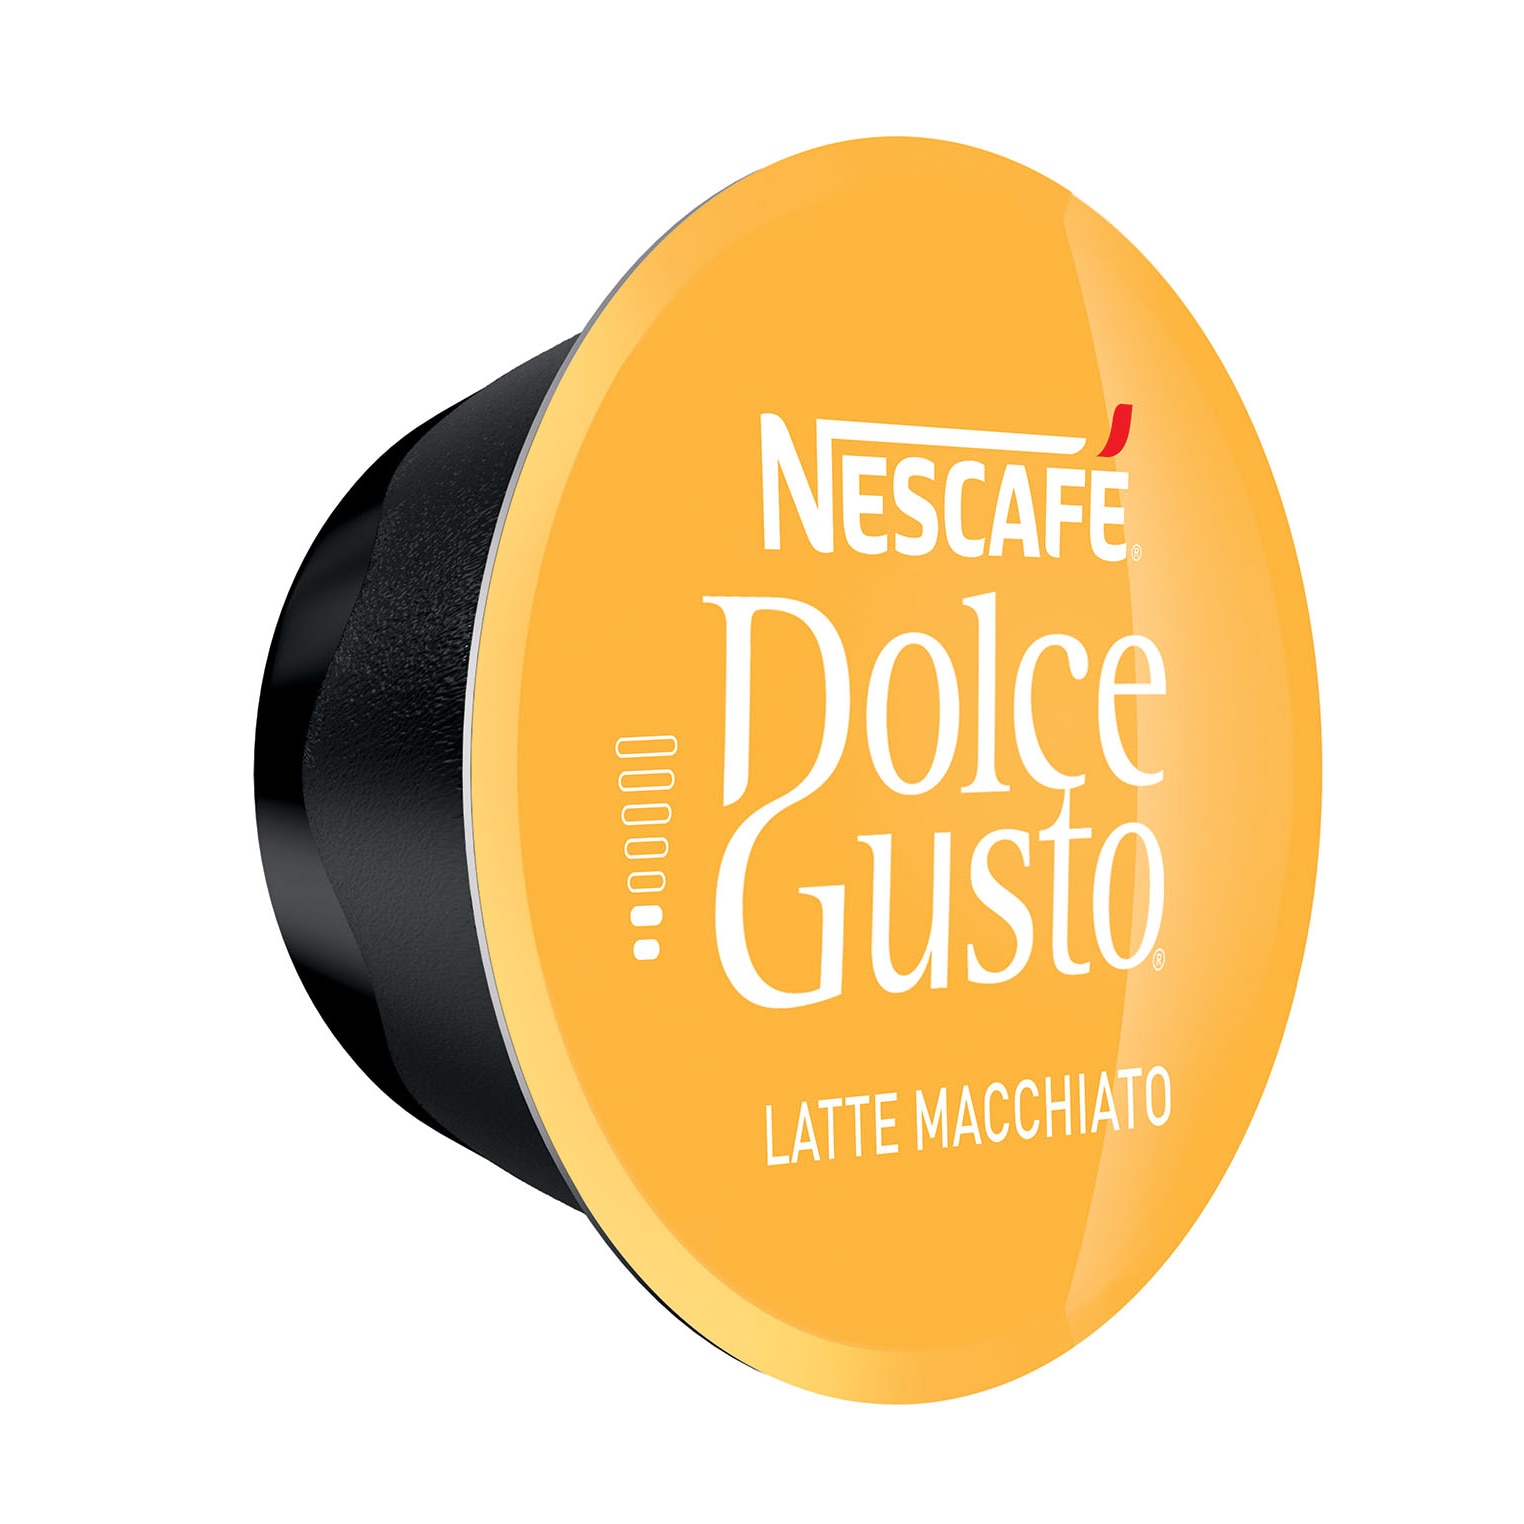 Кофе в капсулах nescafe dolce. Капсулы Dolce gusto Cappuccino. Nescafe Dolce gusto капсулы. Капсулы для кофемашины Нескафе Дольче густо. Nescafe Dolce gusto кофе Cappuccino 16 капс в капсулах.